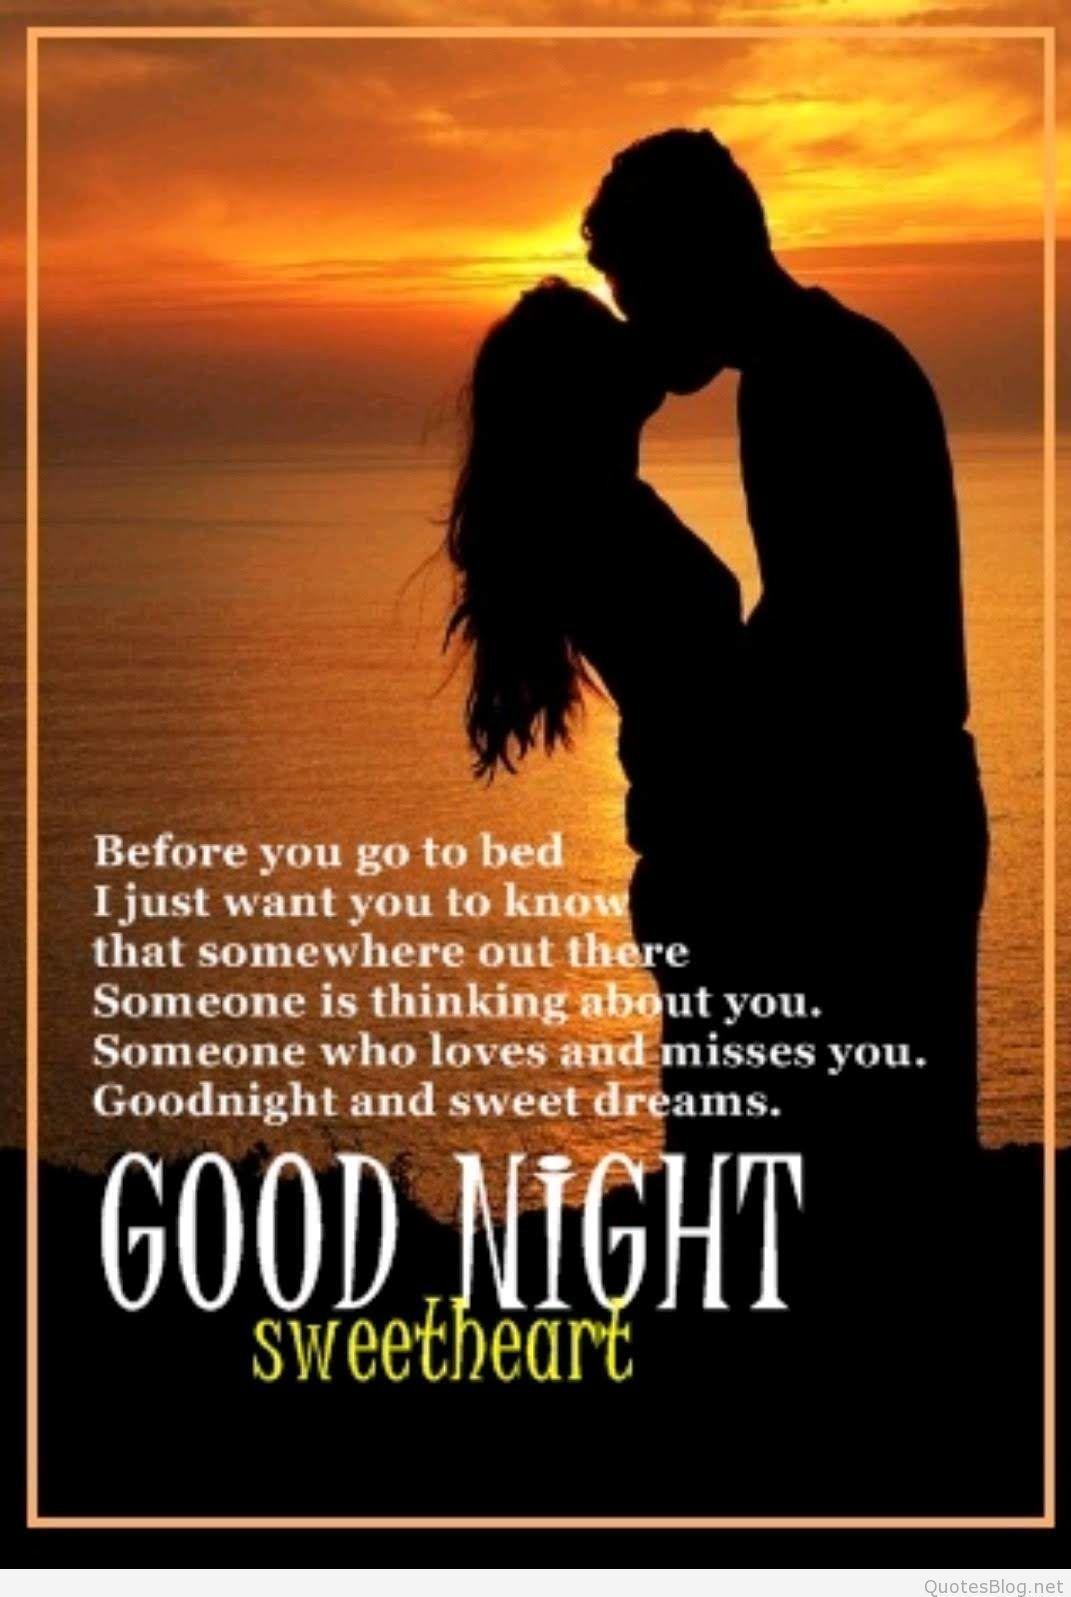 Good Night Sweetheart Image